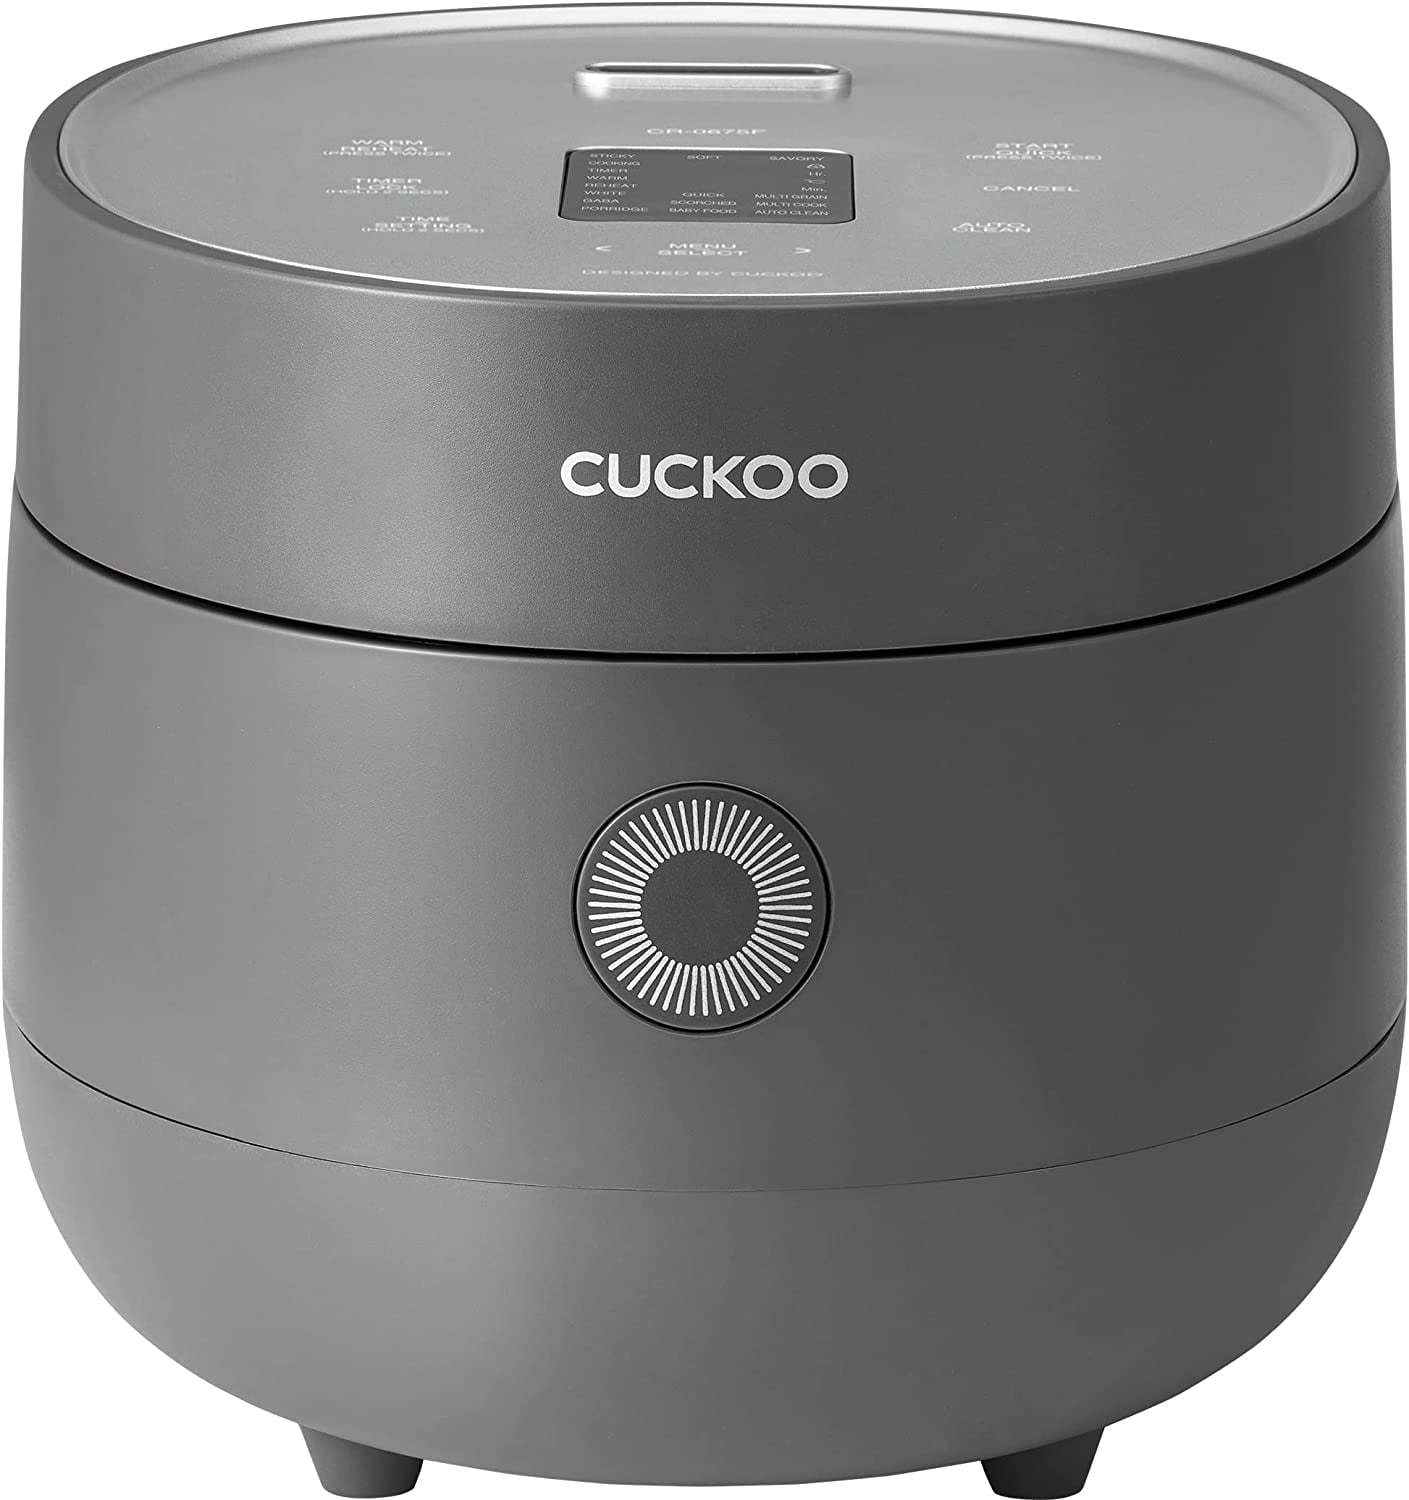 Cuckoo 6-Cup Micom Rice Cooker Maker + Reviews, Crate & Barrel